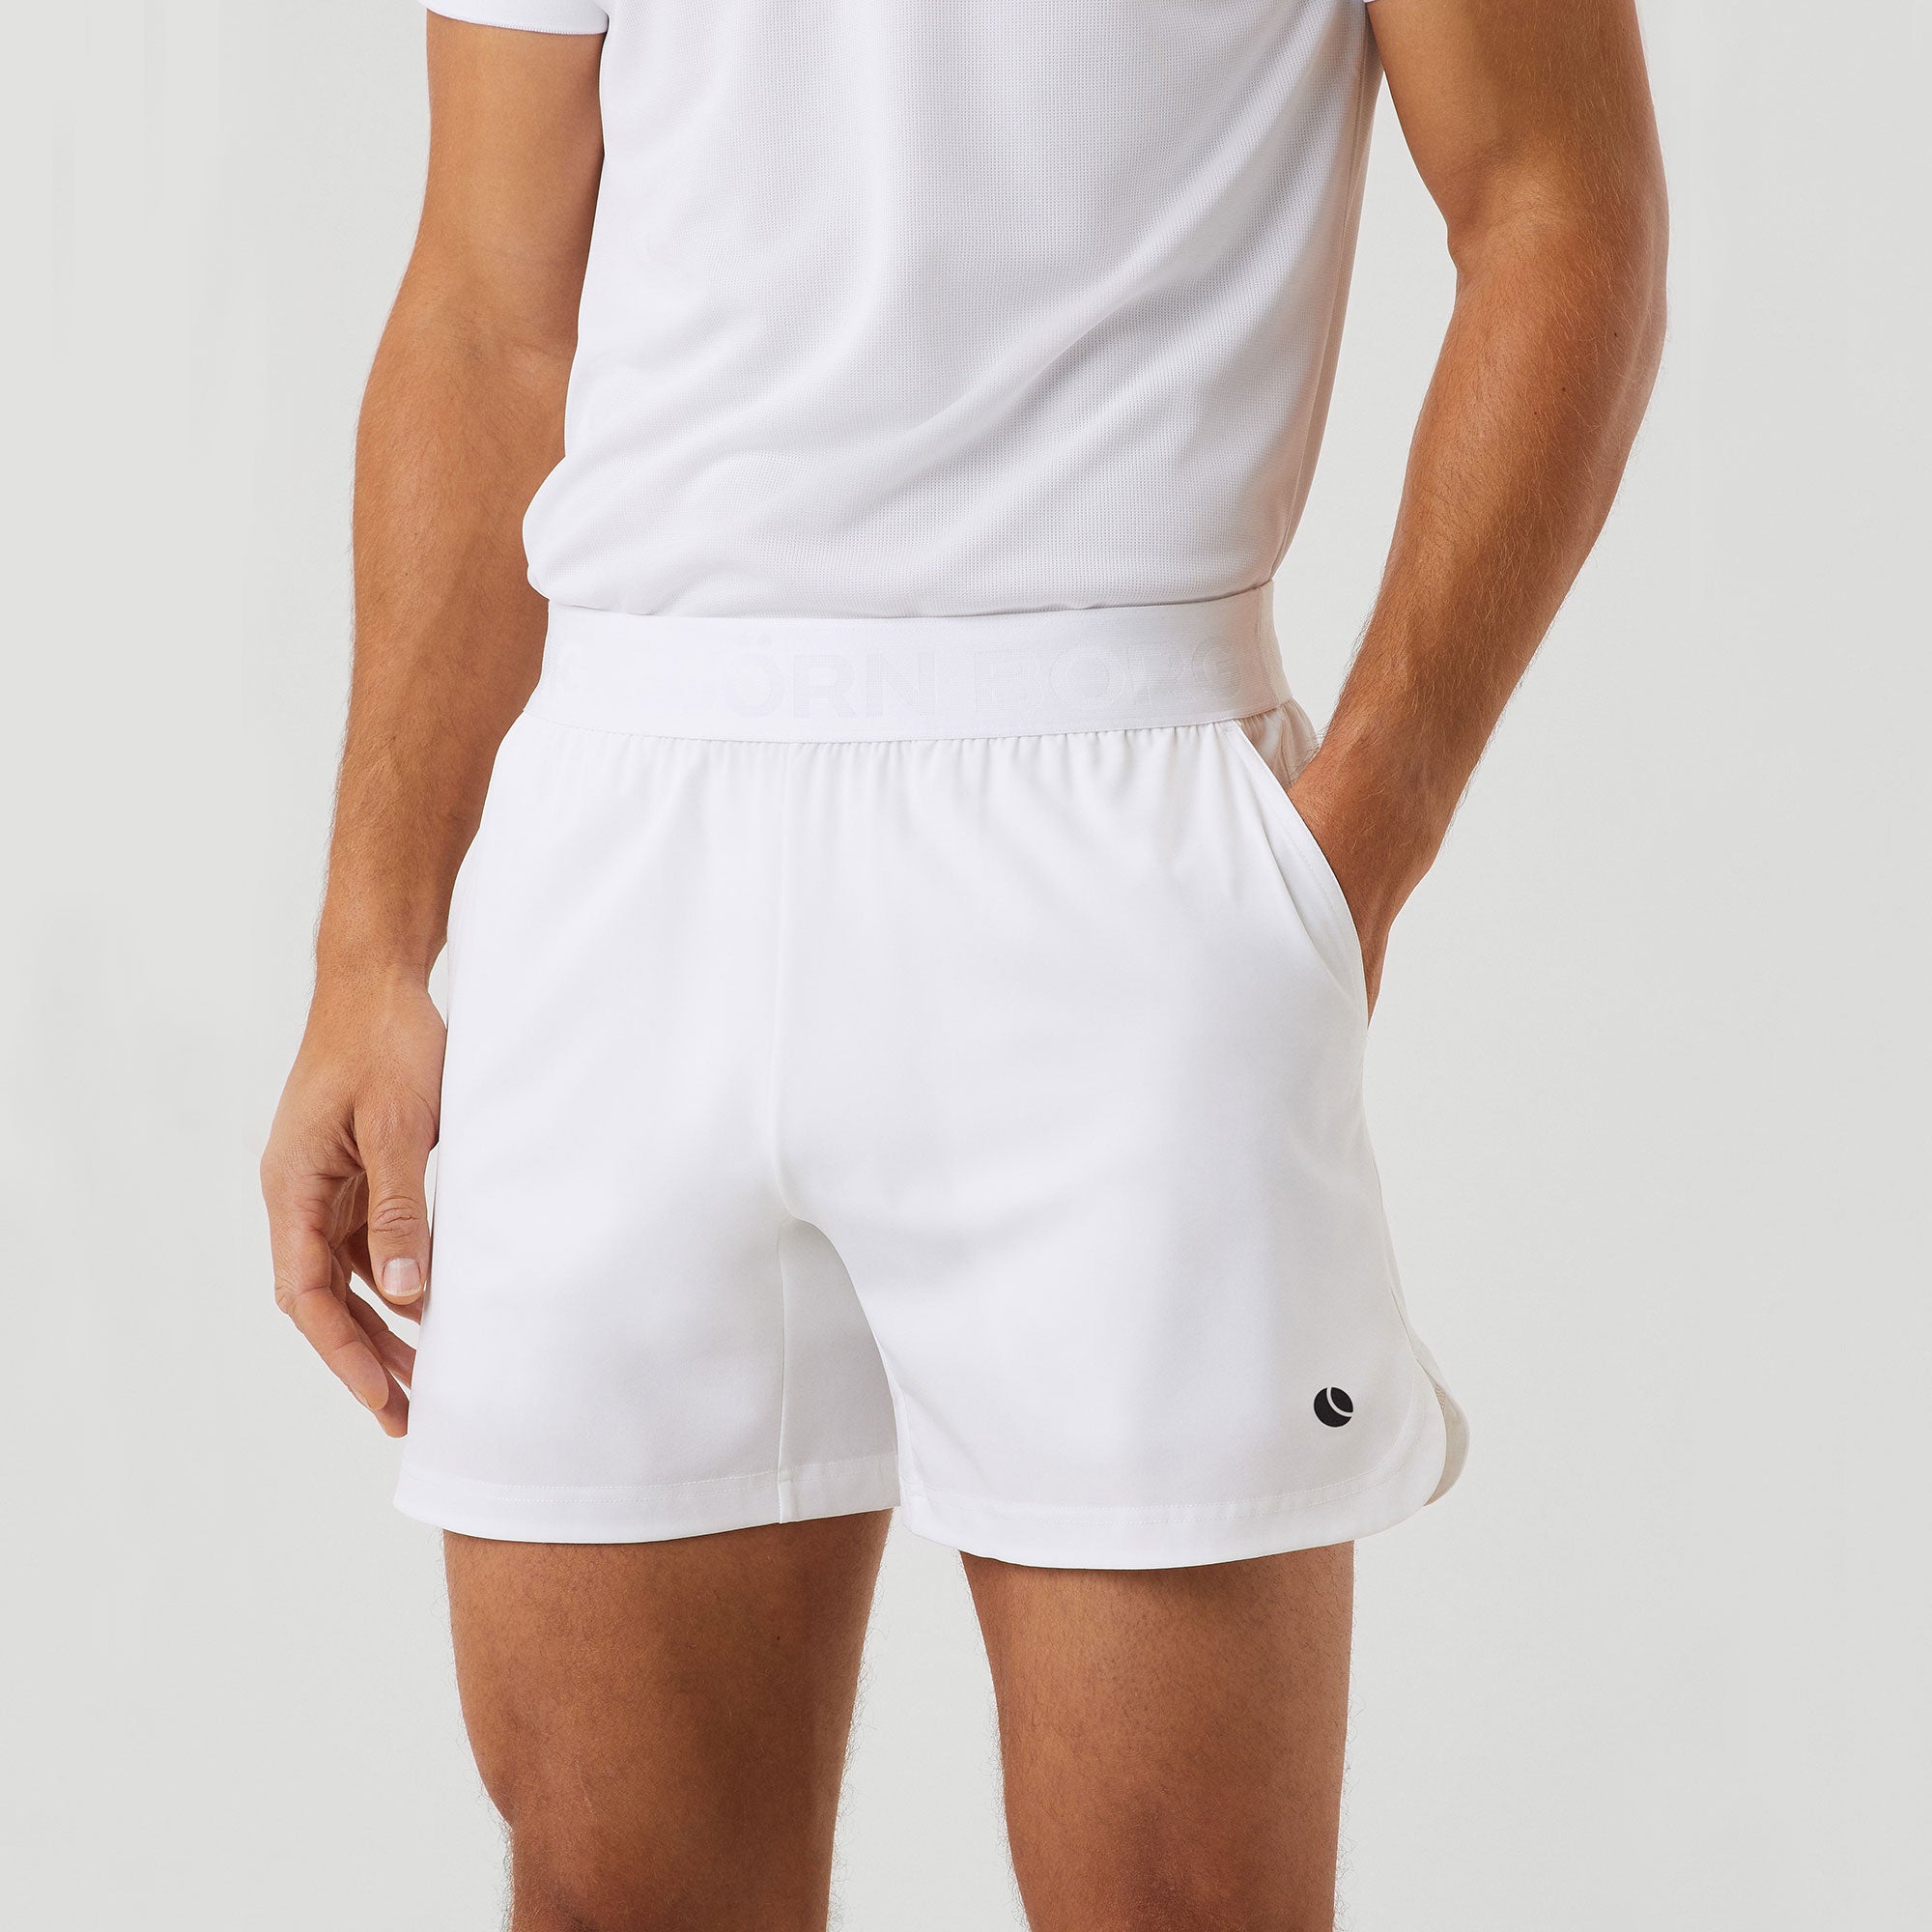 Björn Borg Ace Men's Short Tennis Shorts - White (1)